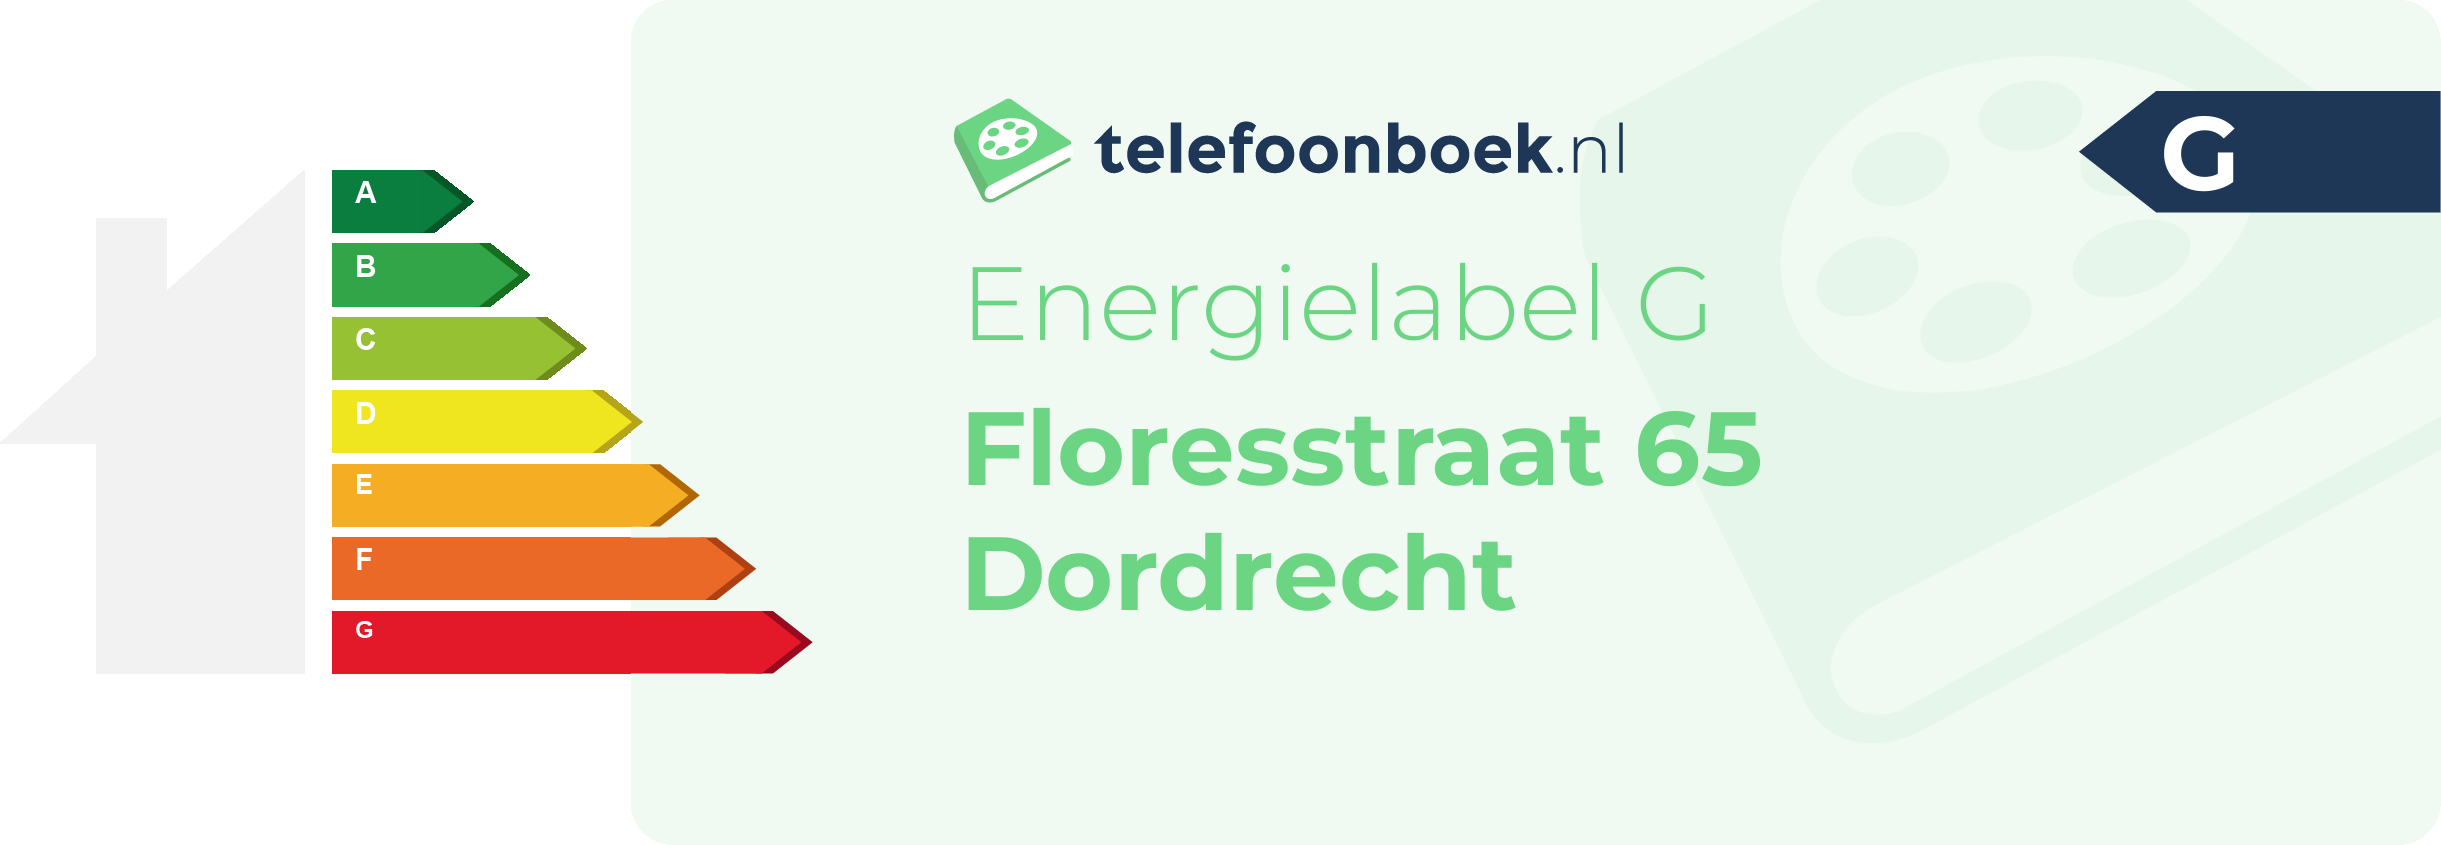 Energielabel Floresstraat 65 Dordrecht